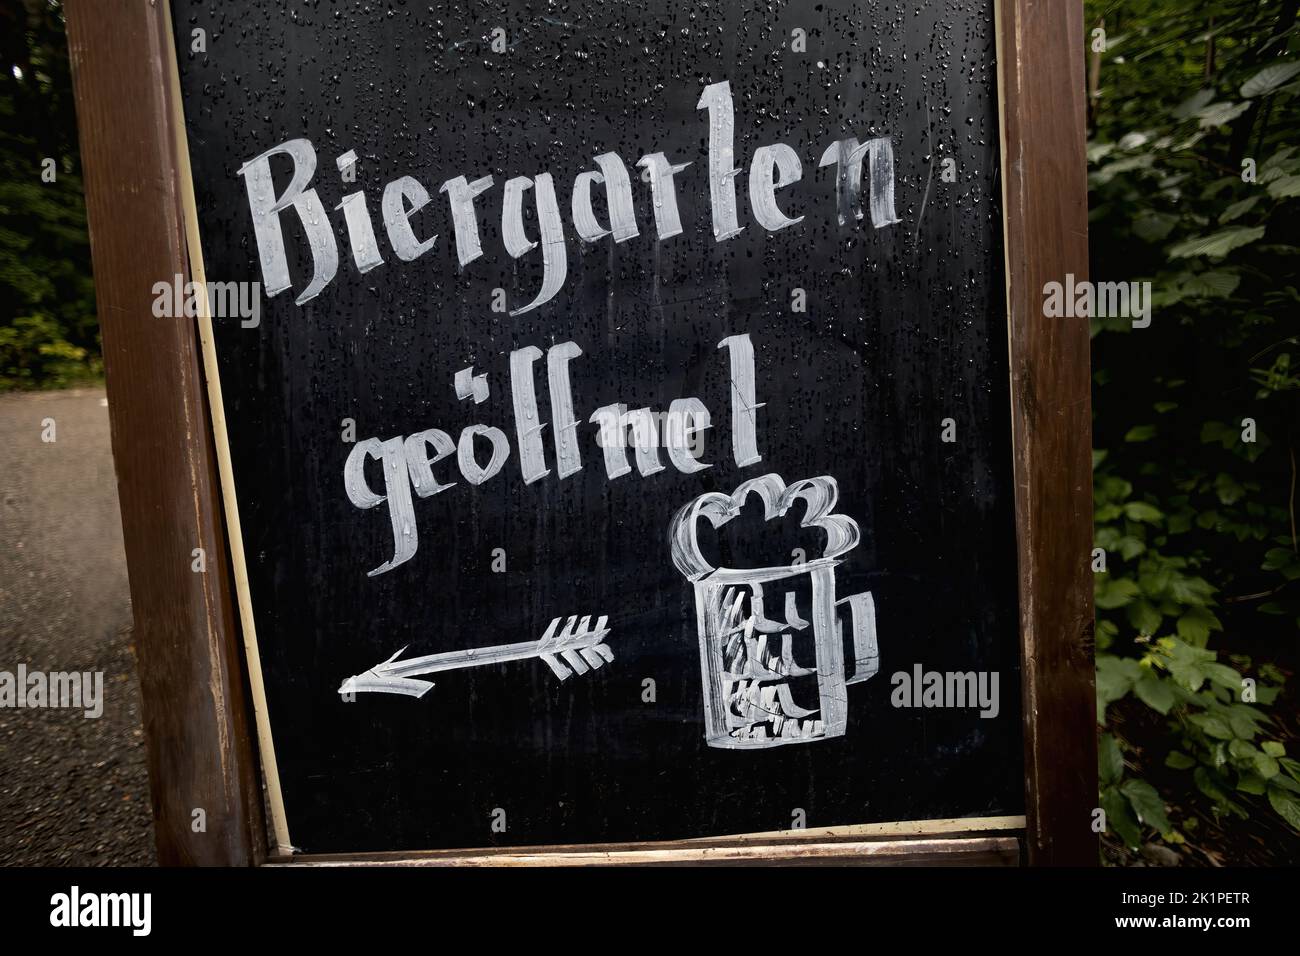 Sign saying beer garden open, in German Biergarten geöffnet Stock Photo